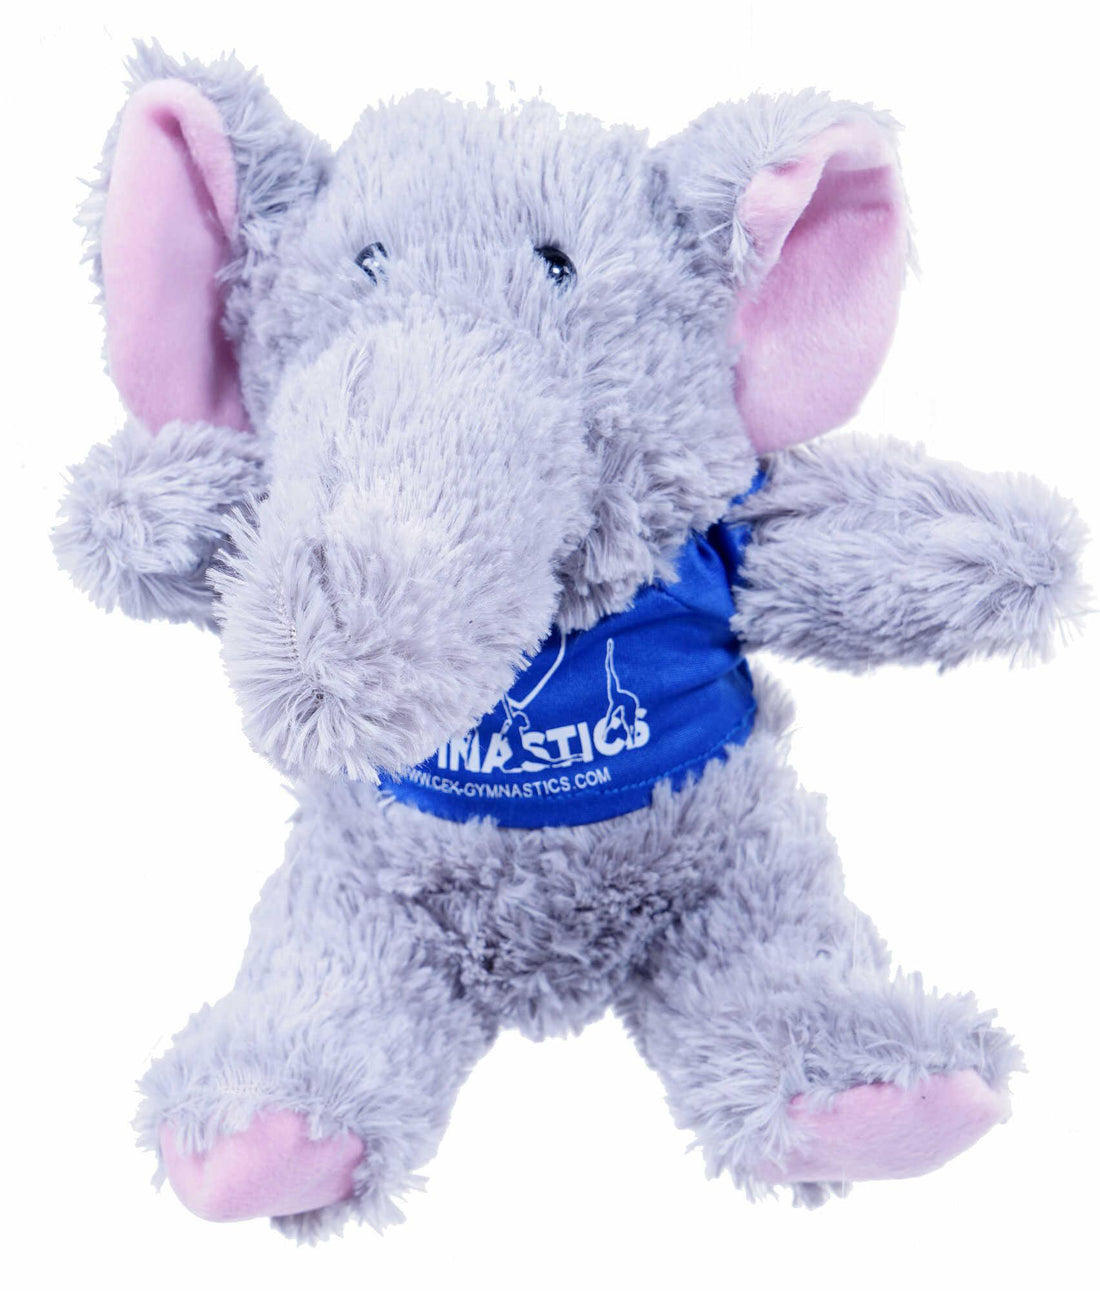 Cuddly elephant plush toy with promo t-shirt